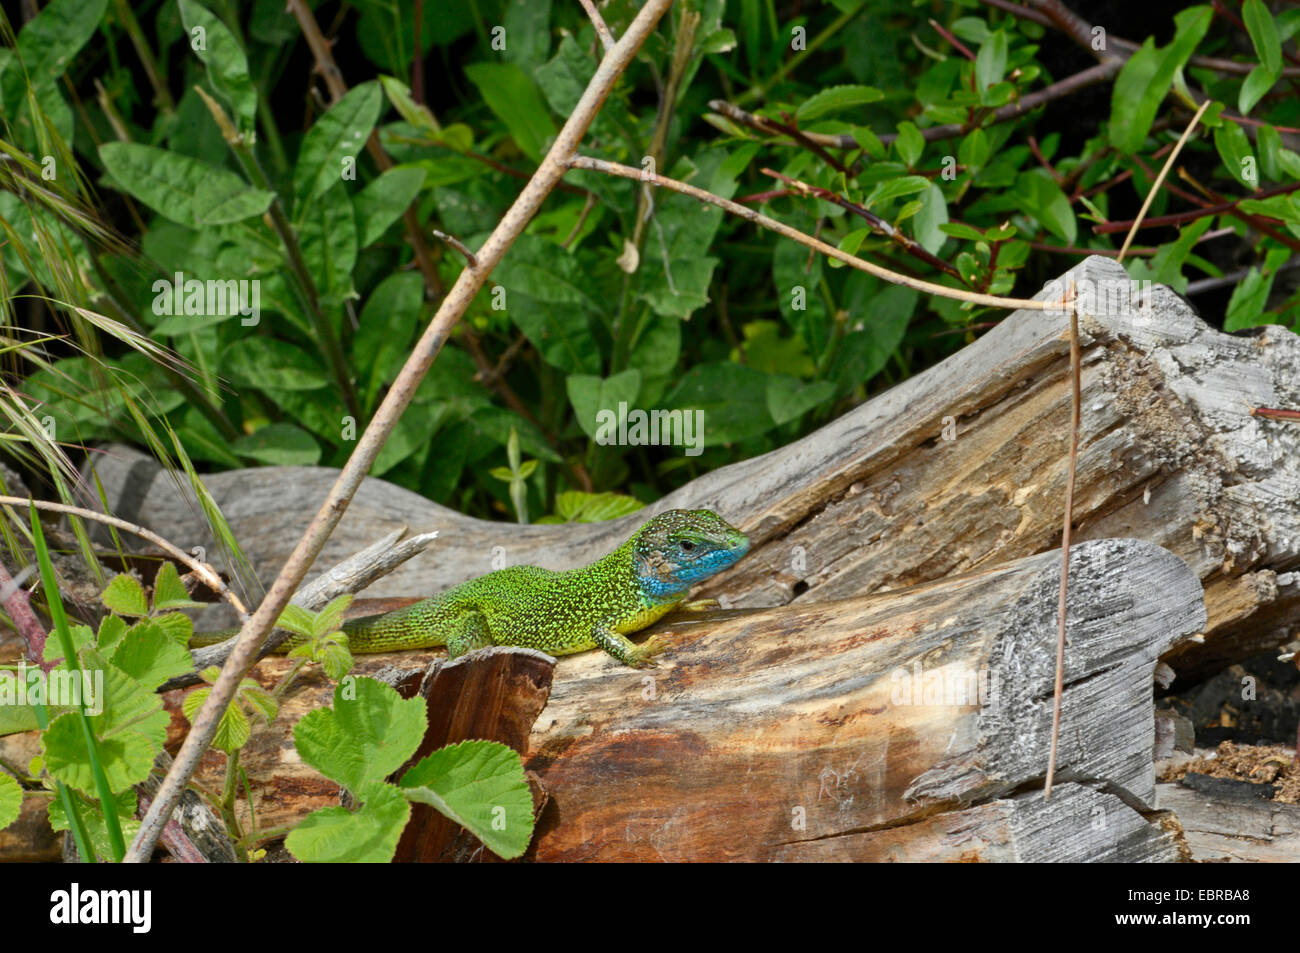 Eastern Green Lizard, European green lizard, Emerald lizard (Lacerta viridis, Lacerta viridis viridis), sunbathing on deadwood, Bulgaria Stock Photo